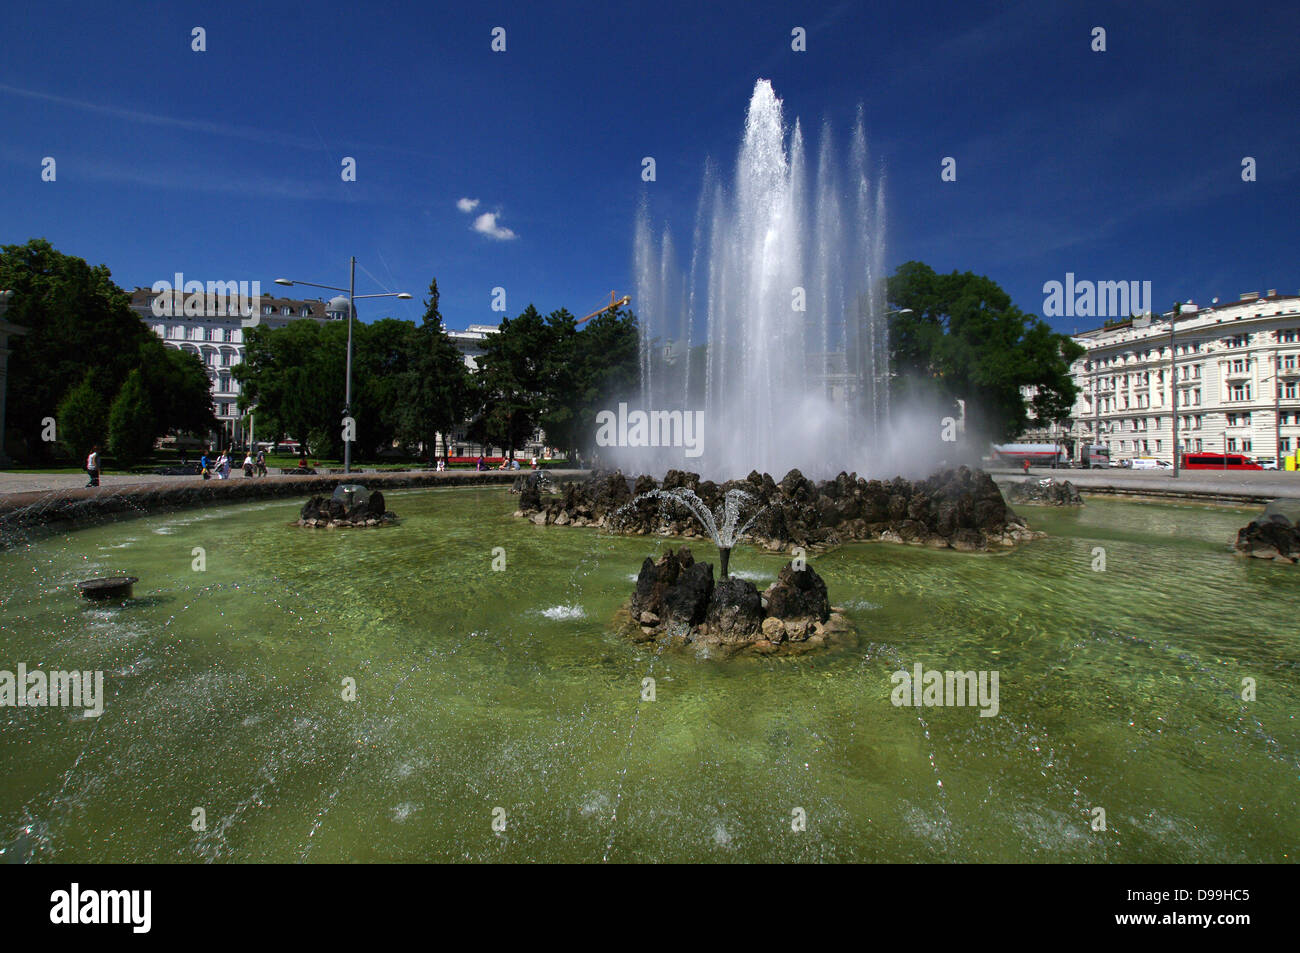 Hochstrahlbrunnen - fontaine Schwarzenbergplatz, Vienne, Autriche Banque D'Images